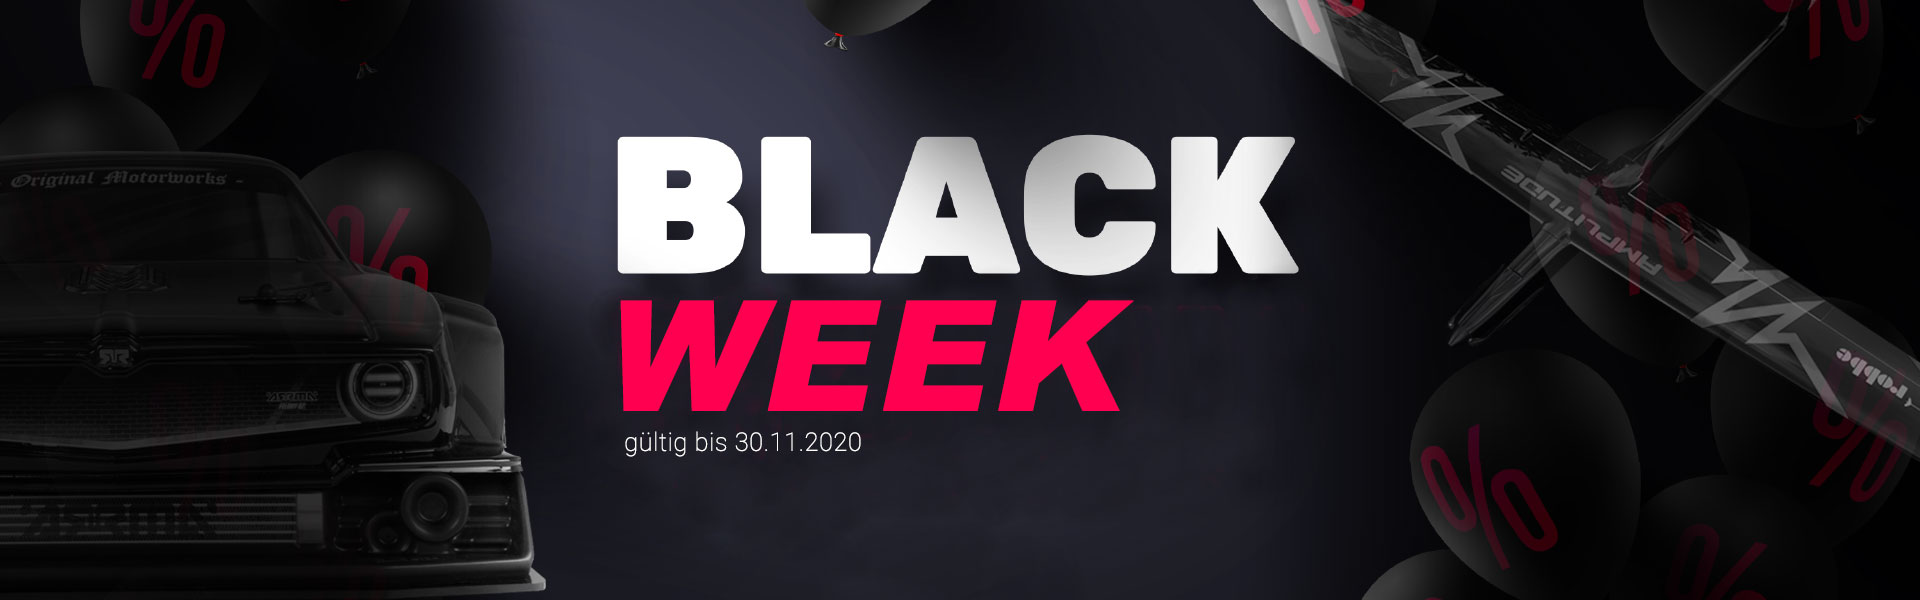 Blackweek2020.jpg